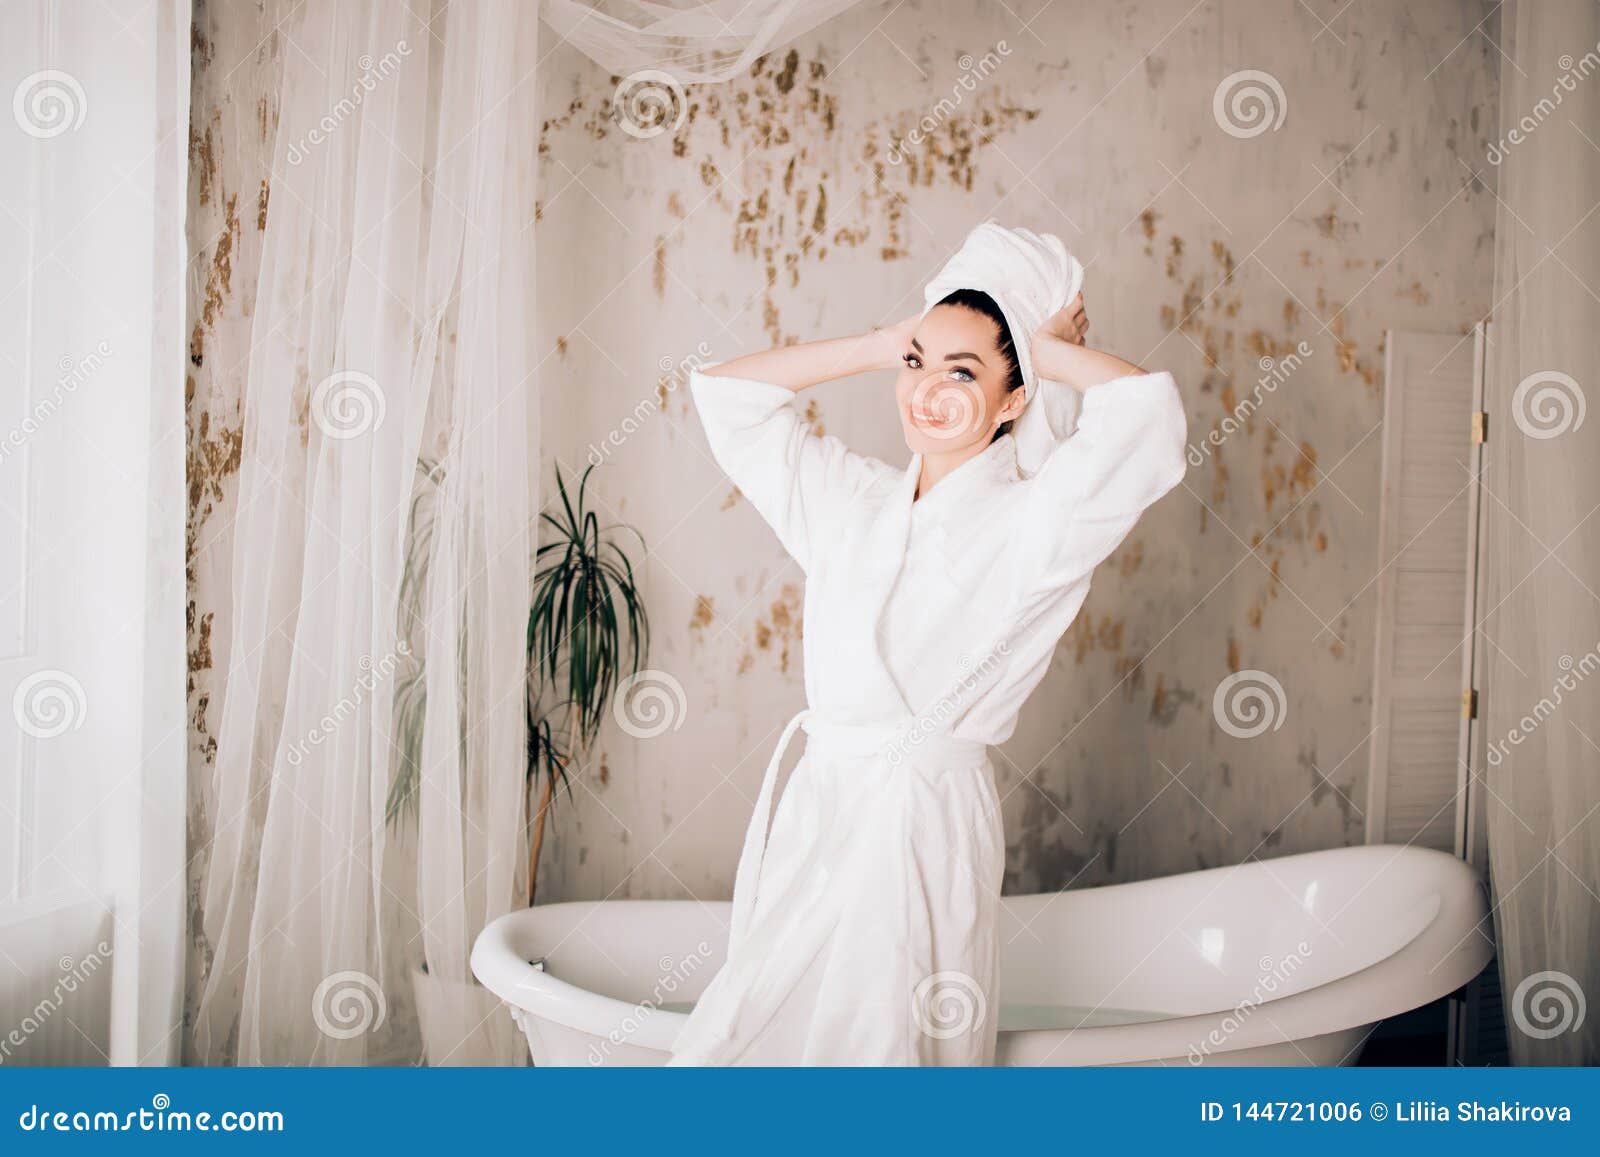 Соблазняет после душа. Девушка в халате в ванной. Девушка в халате и полотенце. Женщина в халате в ванной. Девушка в халате ванна.